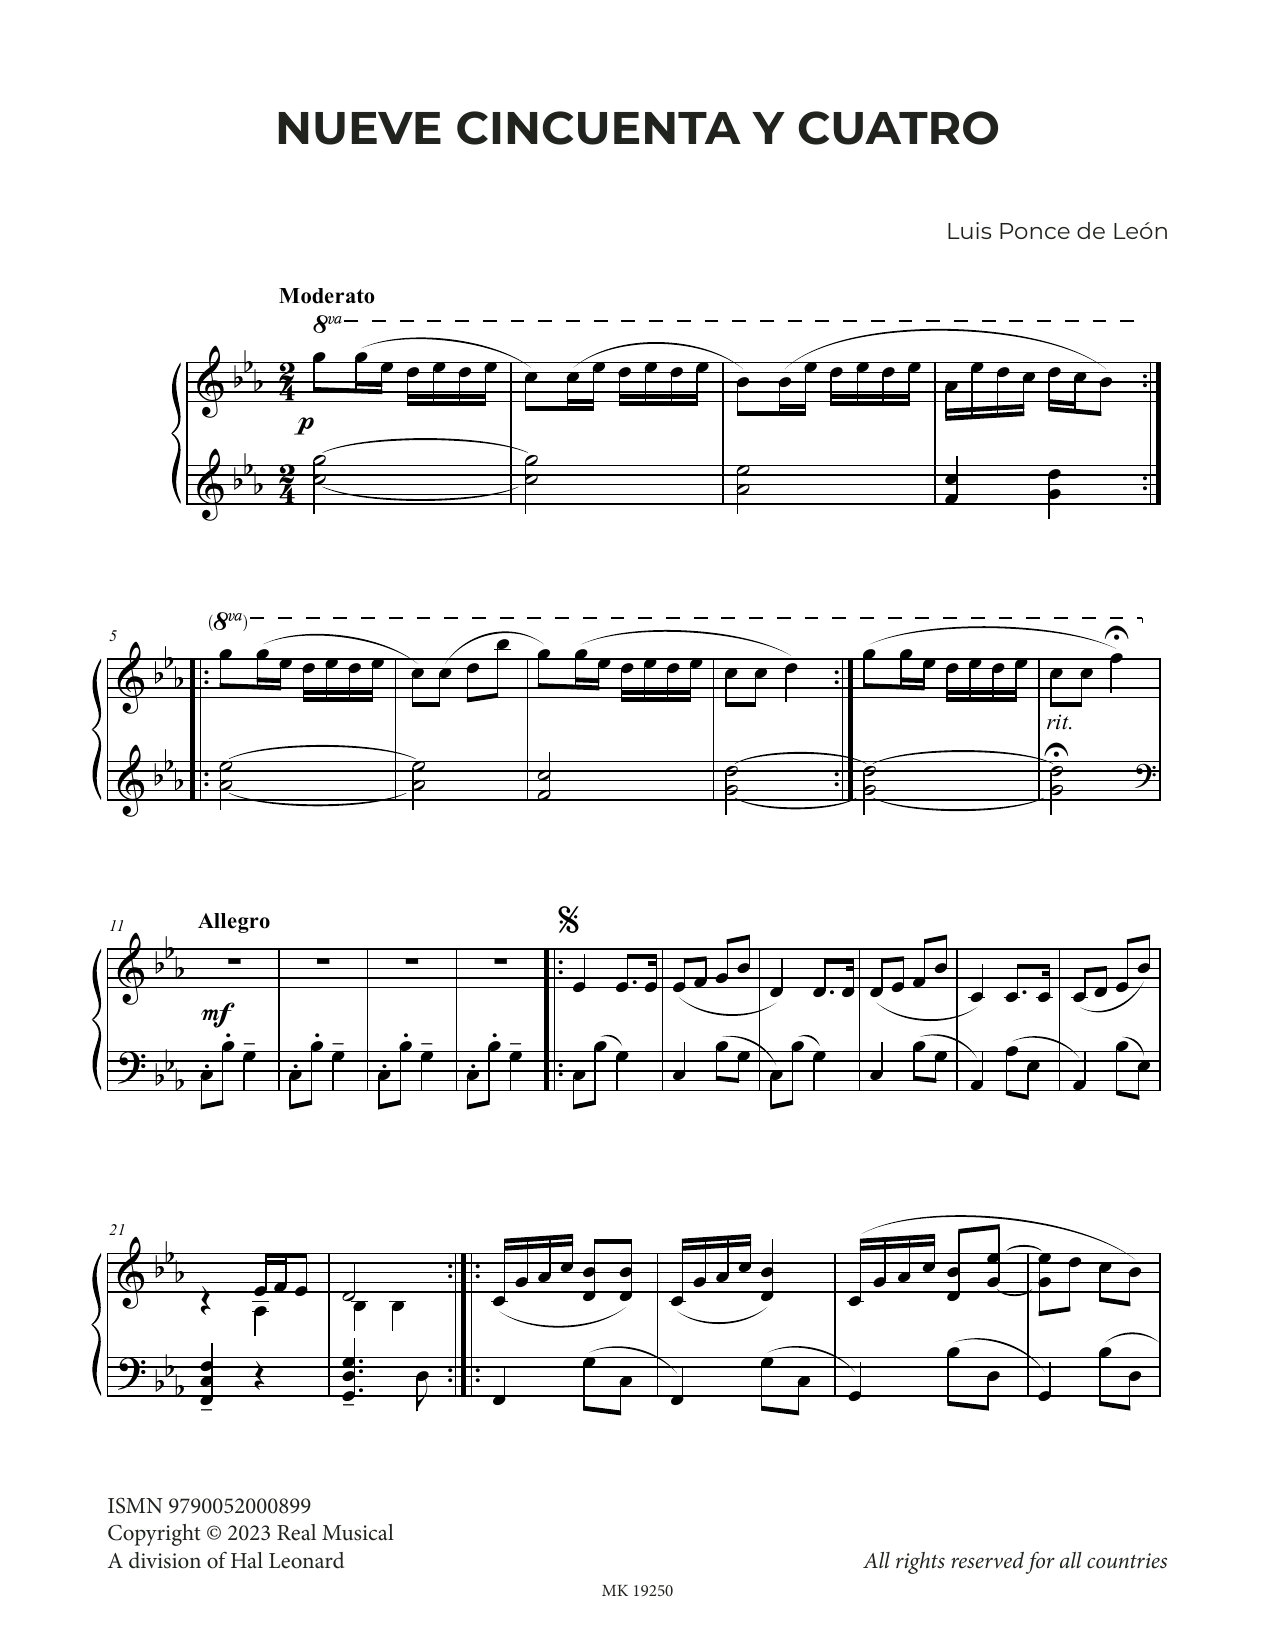 Luis Ponce de León Nueve Cincuenta y Cuatro Sheet Music Notes & Chords for Piano Solo - Download or Print PDF